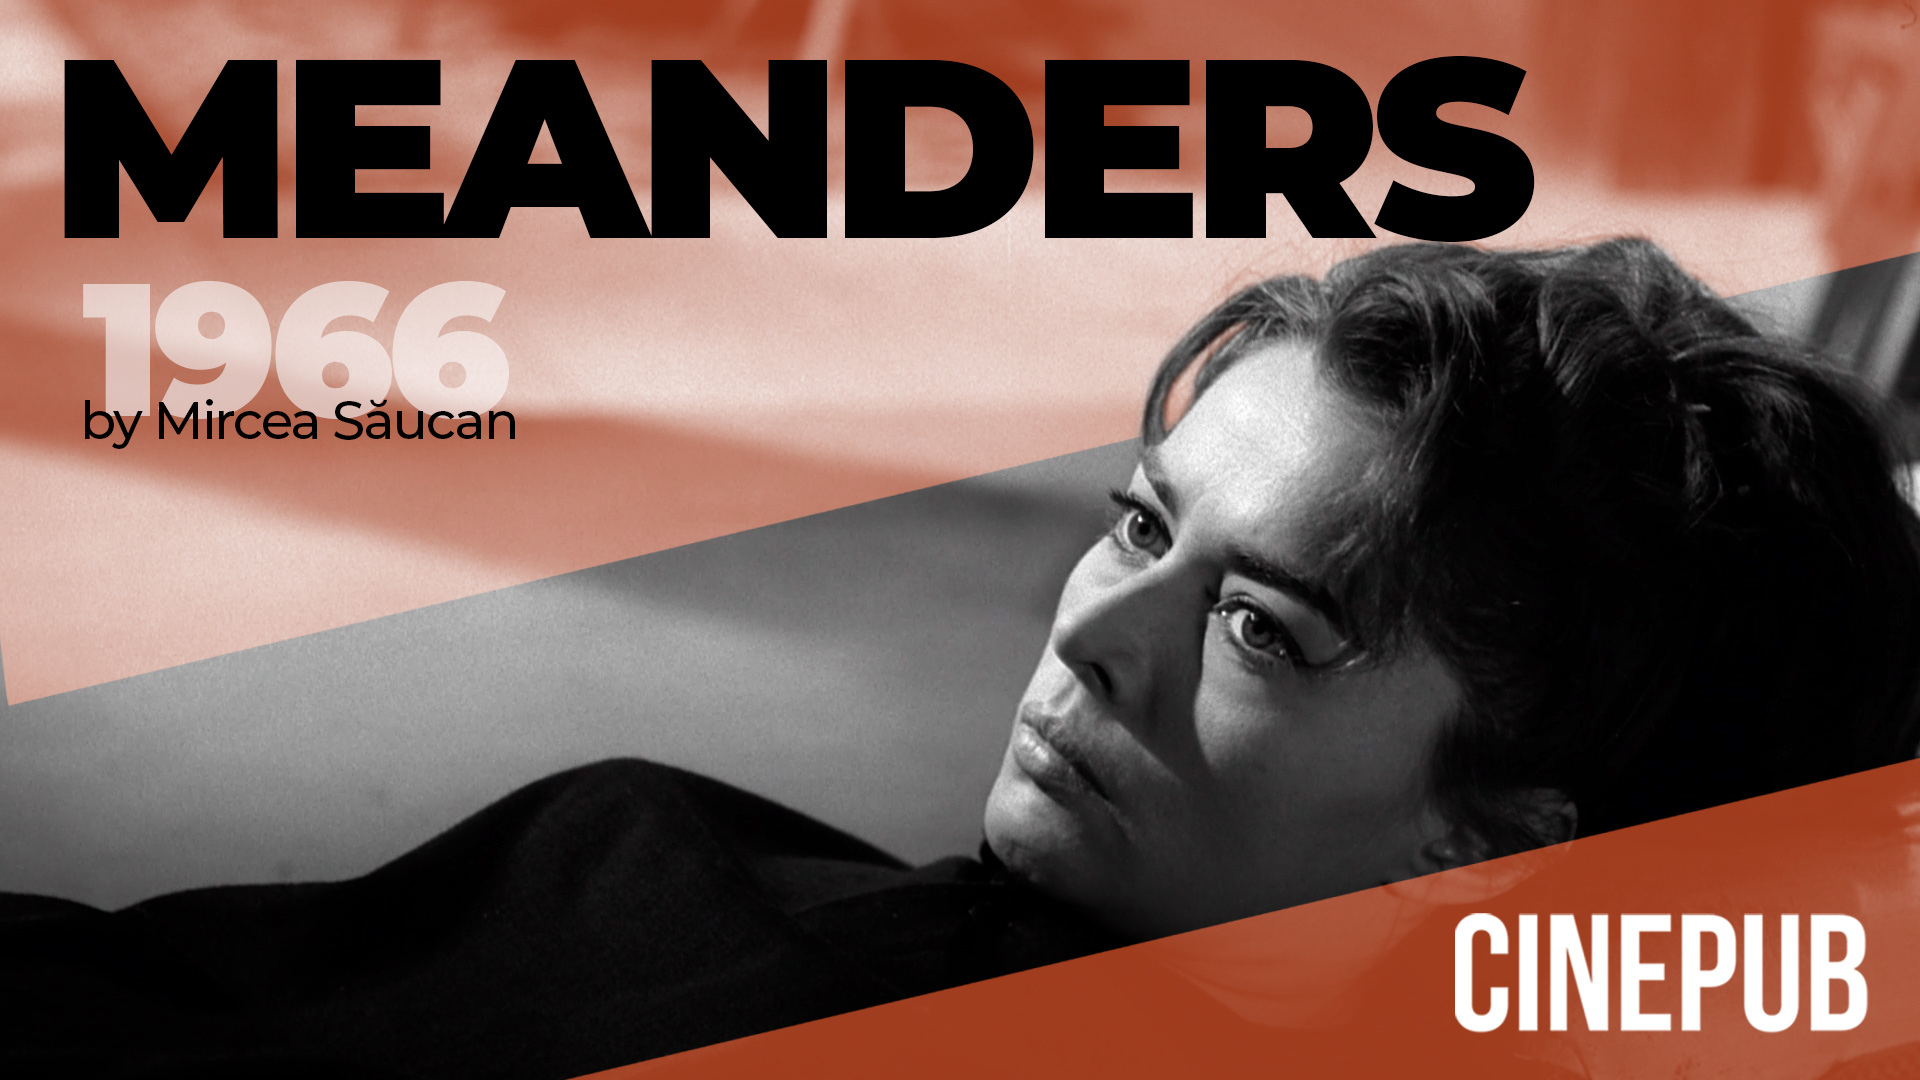 Meanders (1966) - by Mircea Saucan - drama movie online on CINEPUB